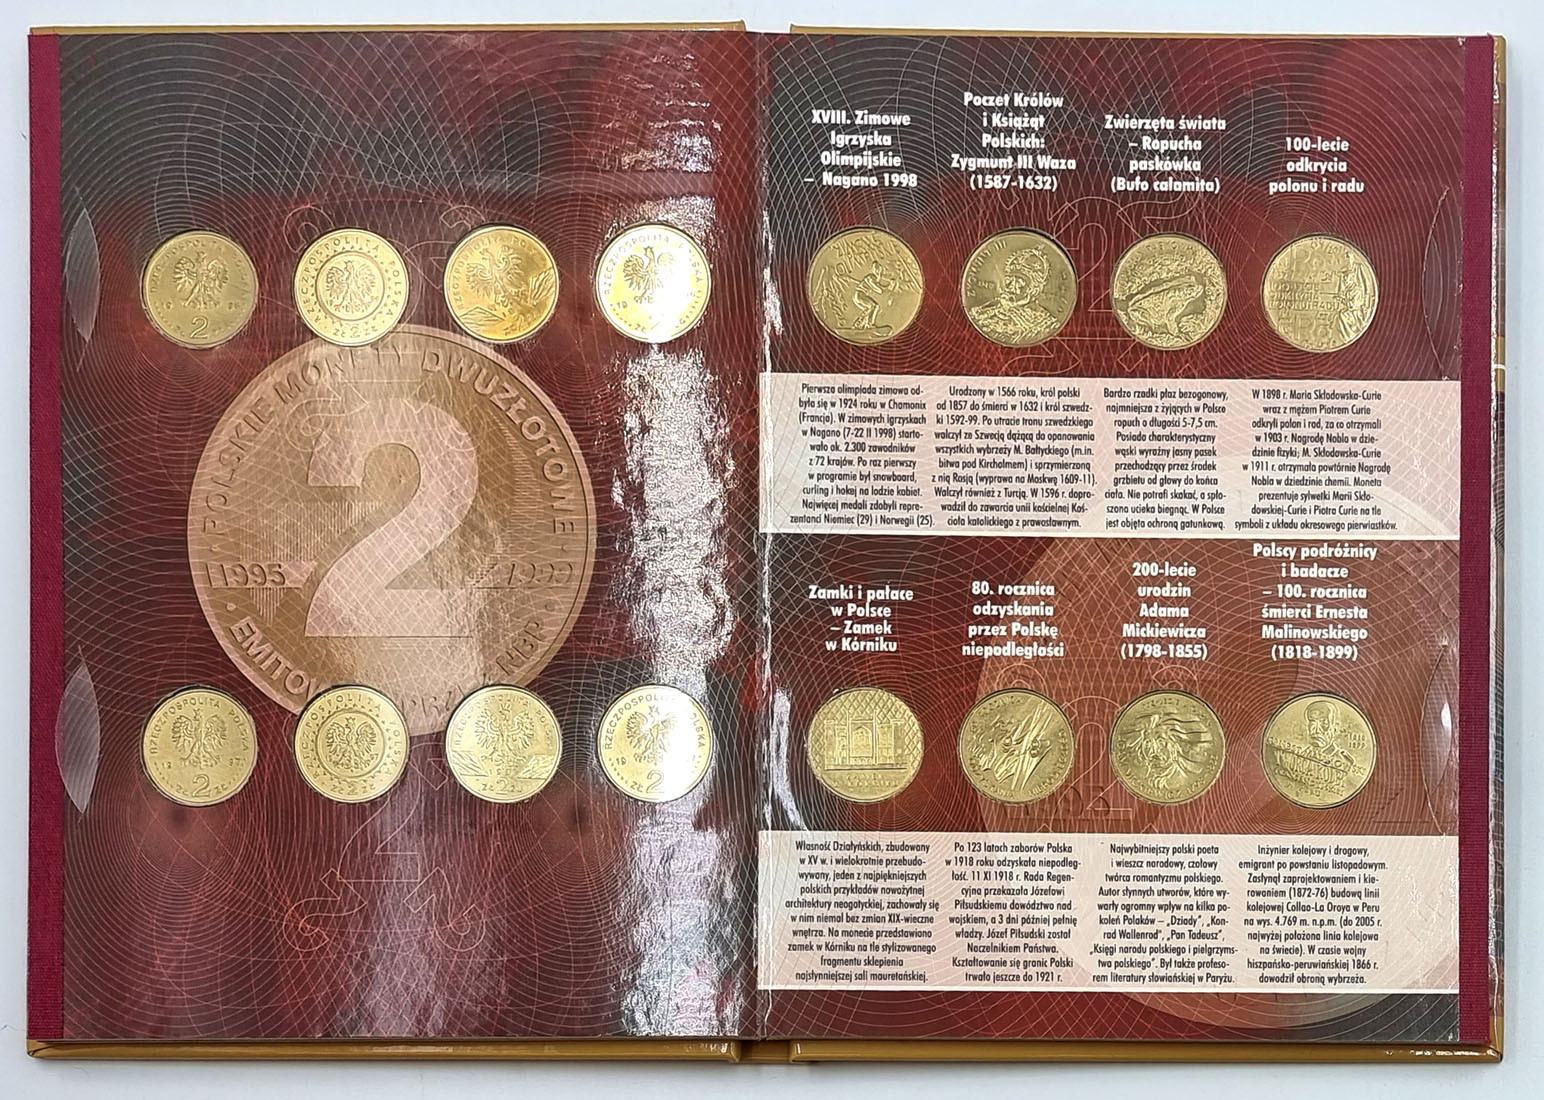 III RP. Polskie Monety Dwuzłotowe 1995-2009 / 2000-2003/ 2004 -2005 i Herby 16 Województw, 4 klasery z monetami